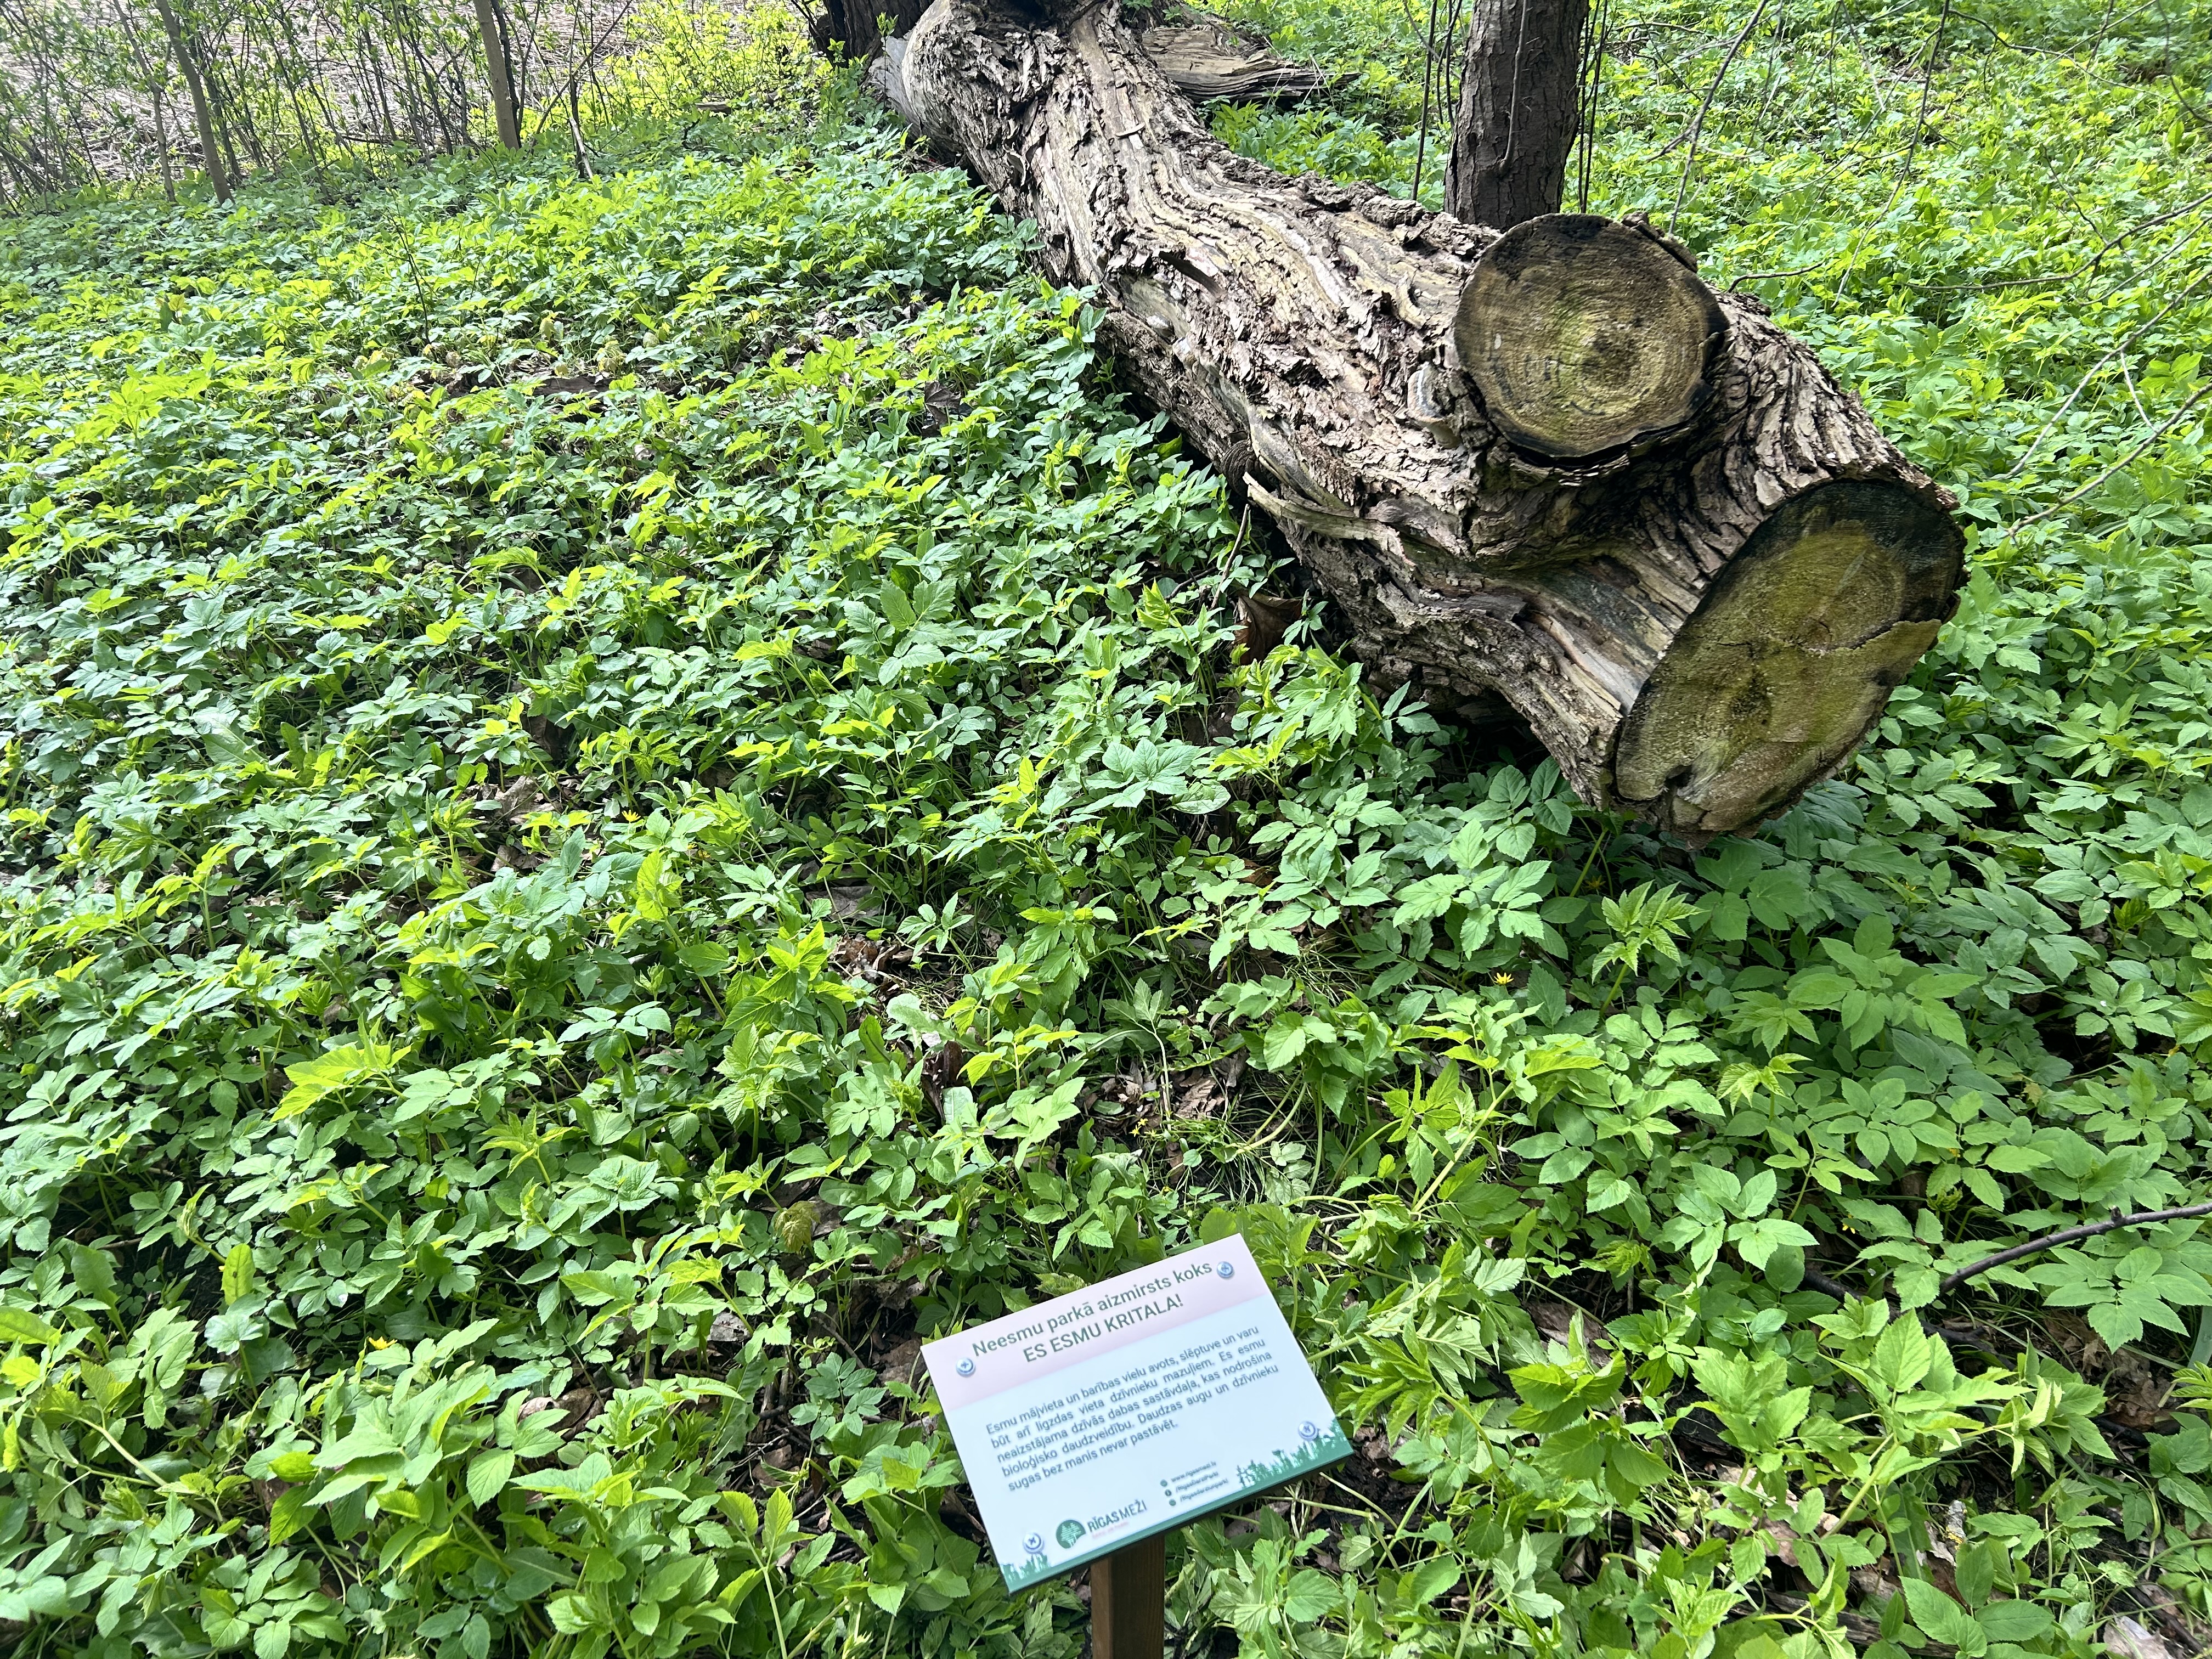 Zaļā zālē guļ vecs koks - kritala. Pie šī koka uzlikta nozīmēta ar paskaidrojumu, kas ir kritala